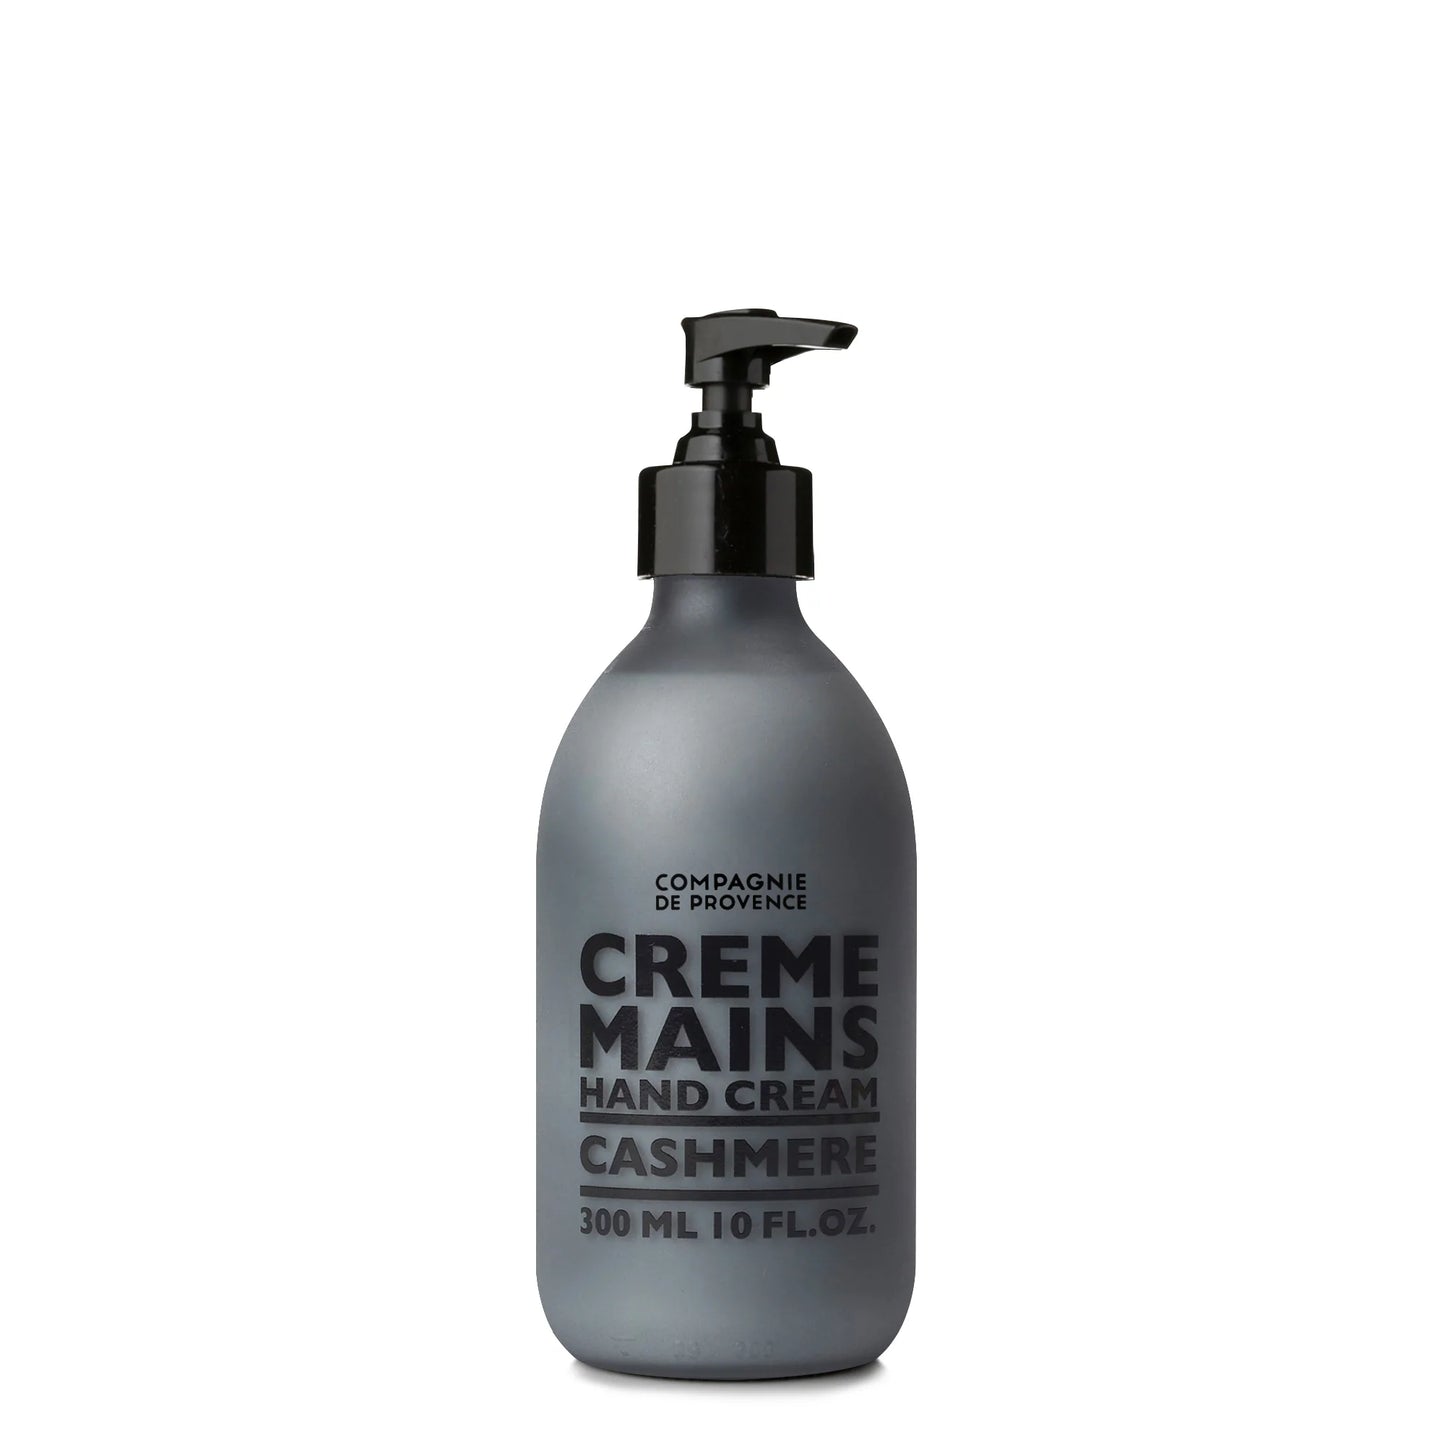 Hand Cream - La Compagnie de Provence